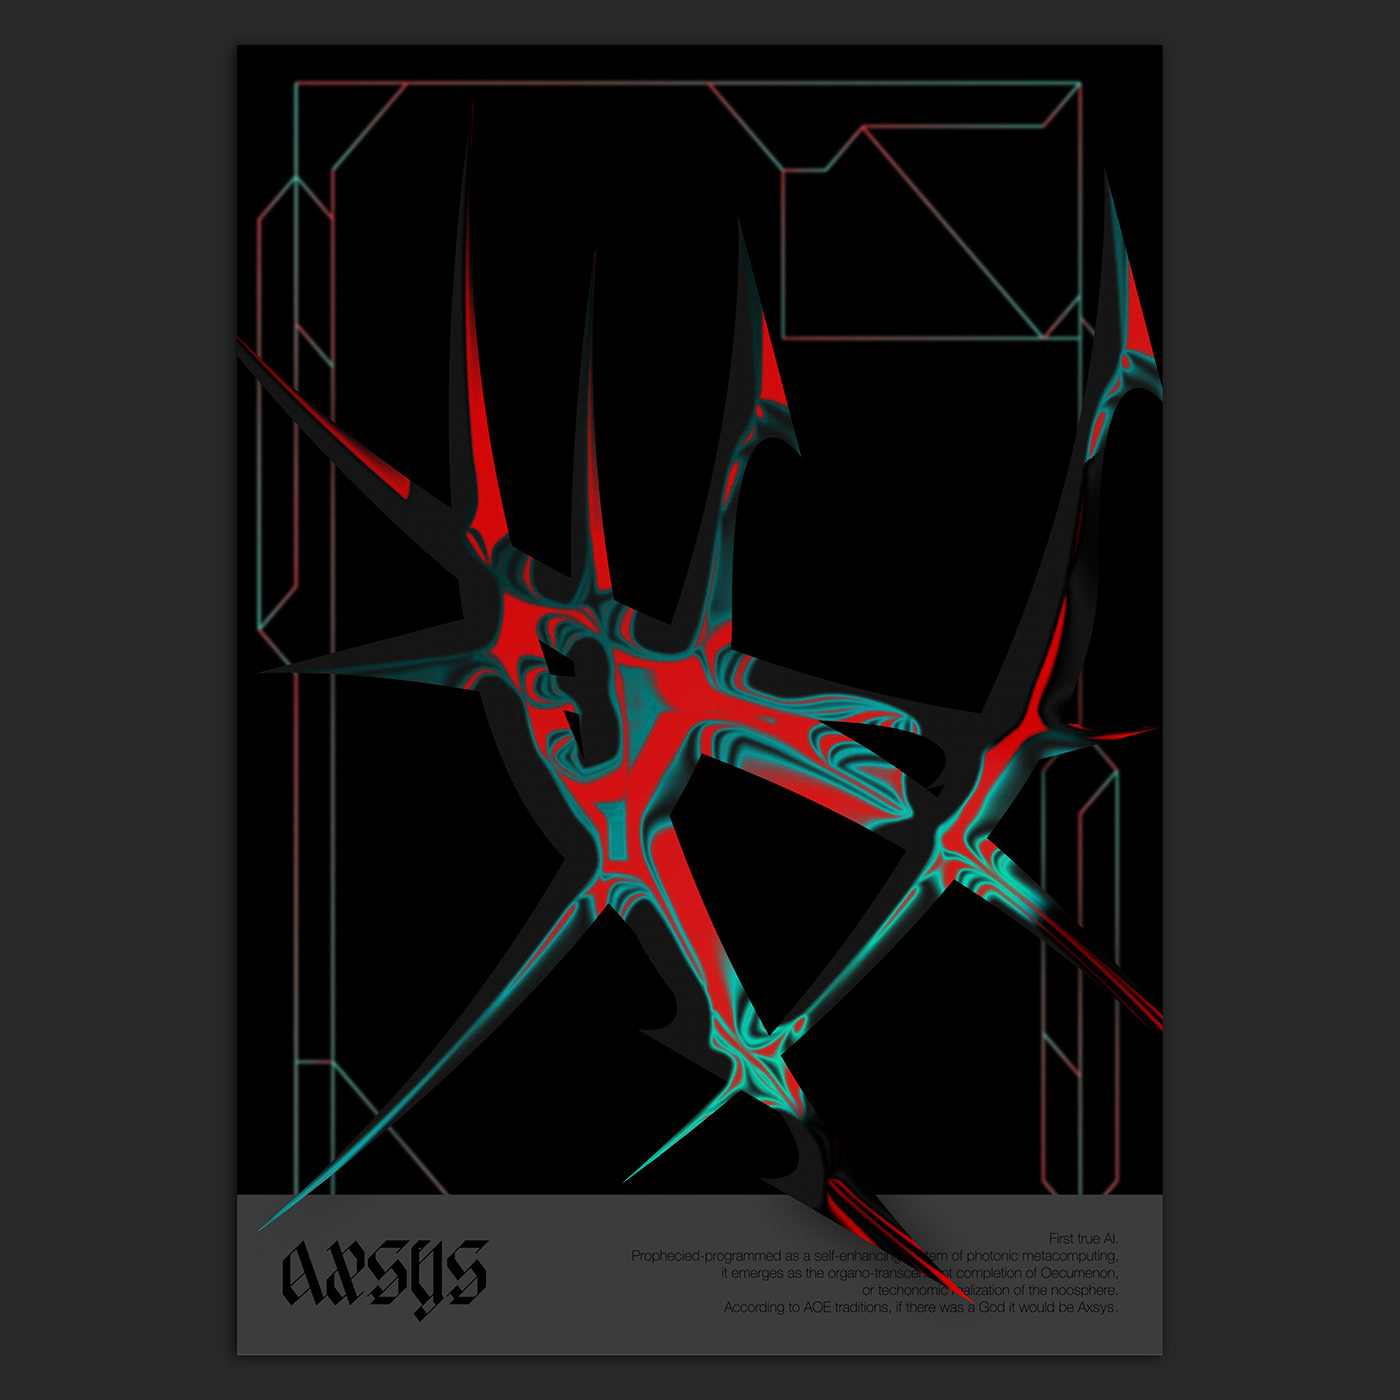 3D ccru experimental post-digital poster Render visualart